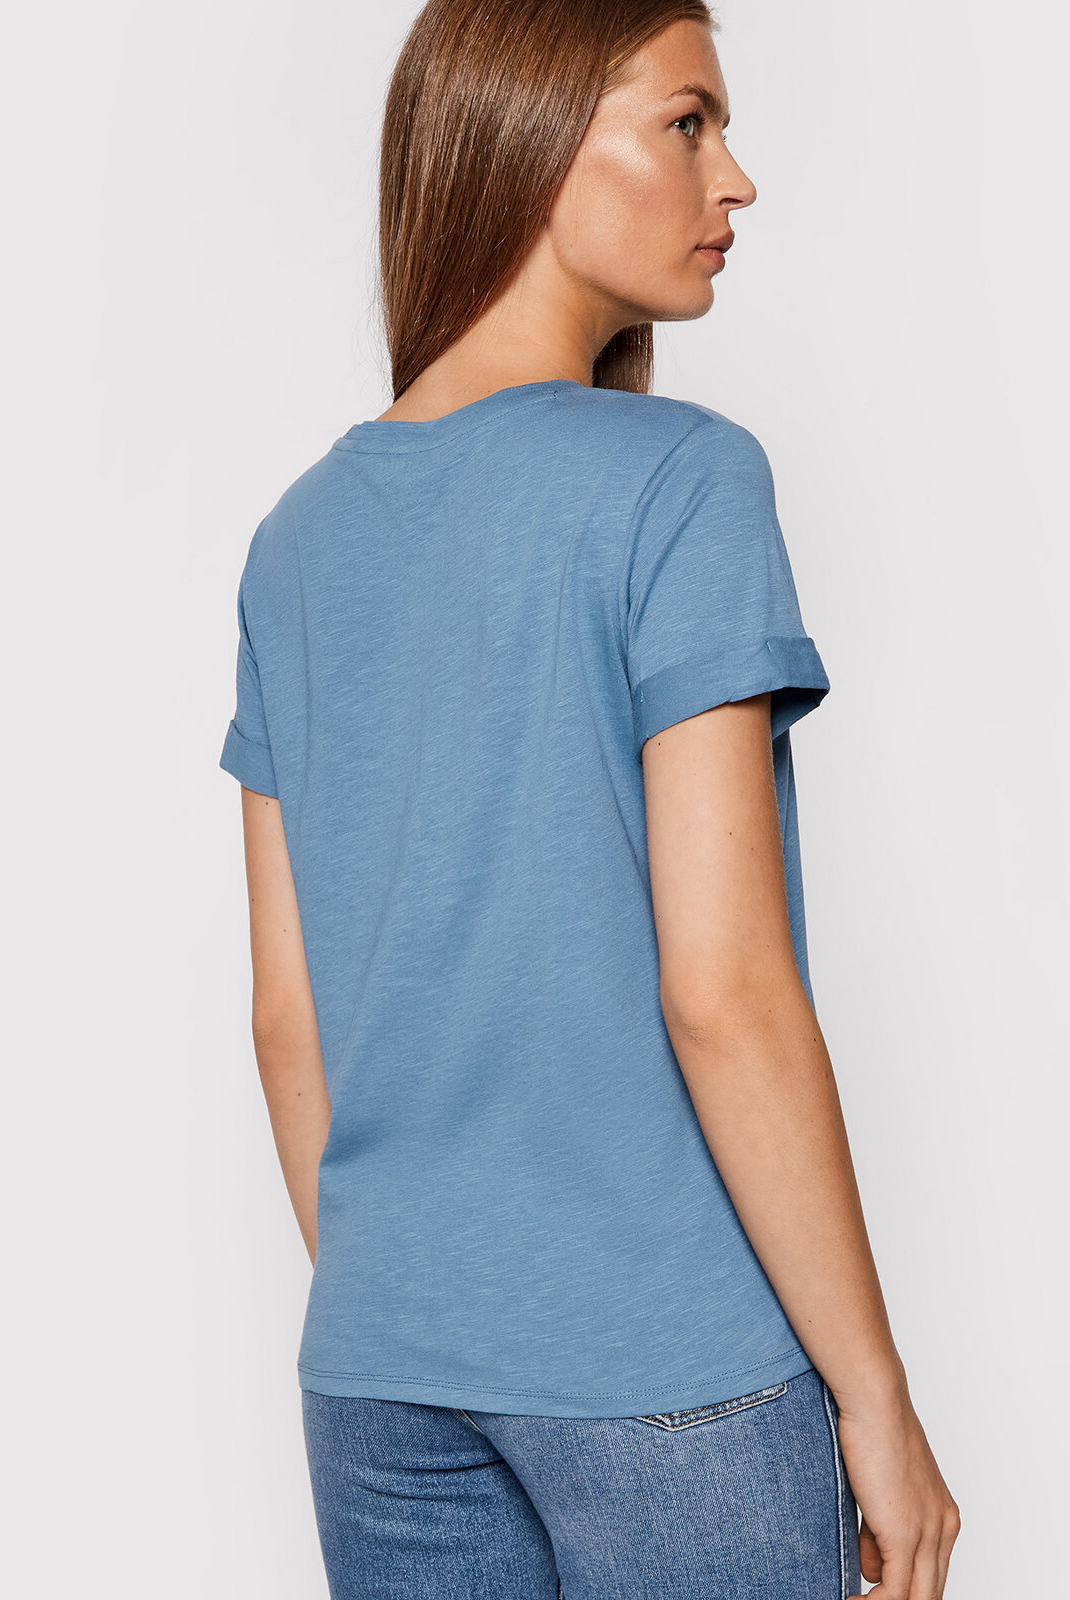 Tee-Shirt bleu regular fit W0gi69 - Guess Femme